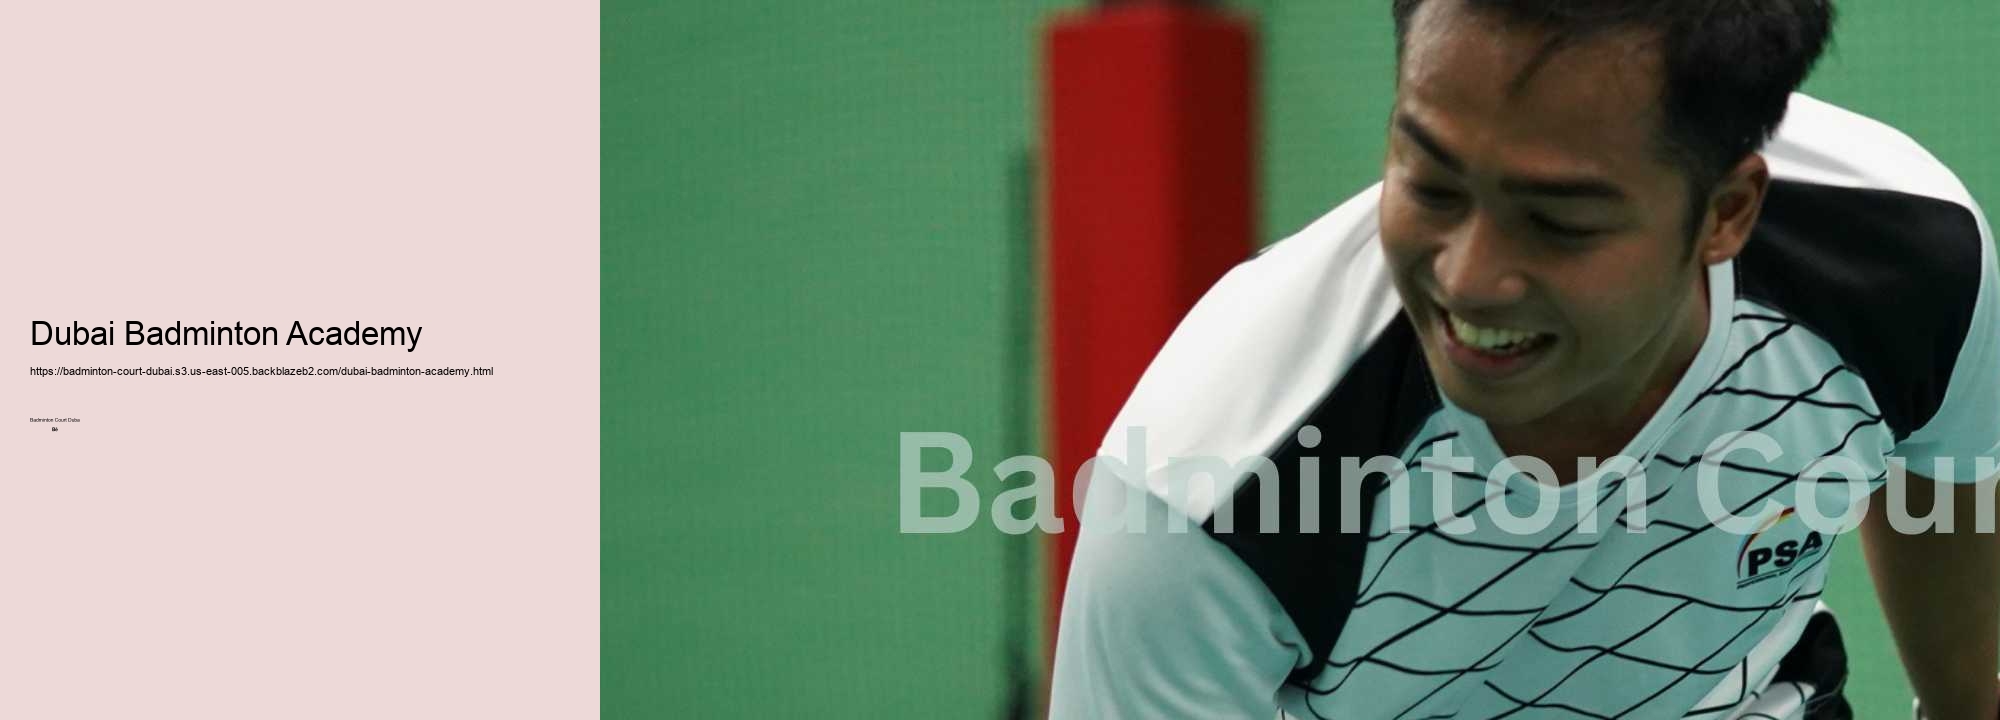 Dubai Badminton Academy